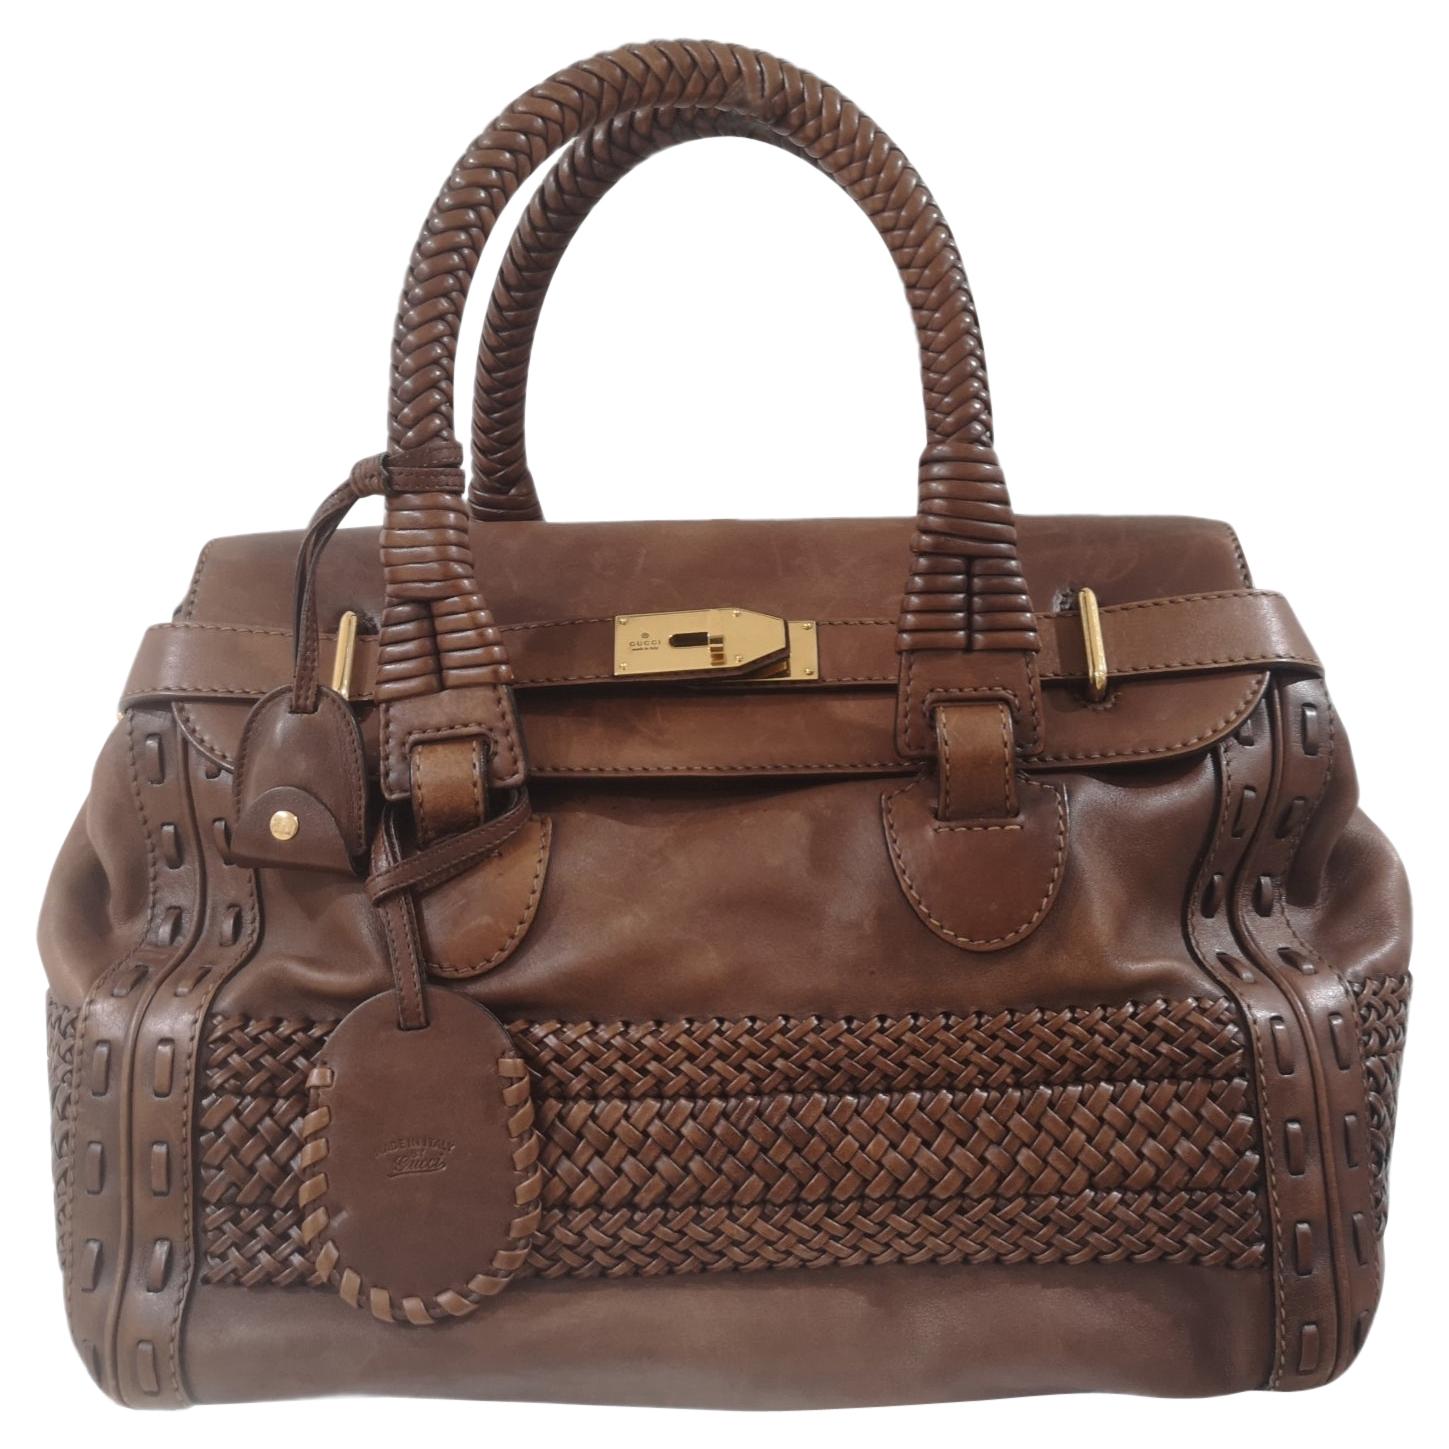 Gucci brown leather handle shoulder bag